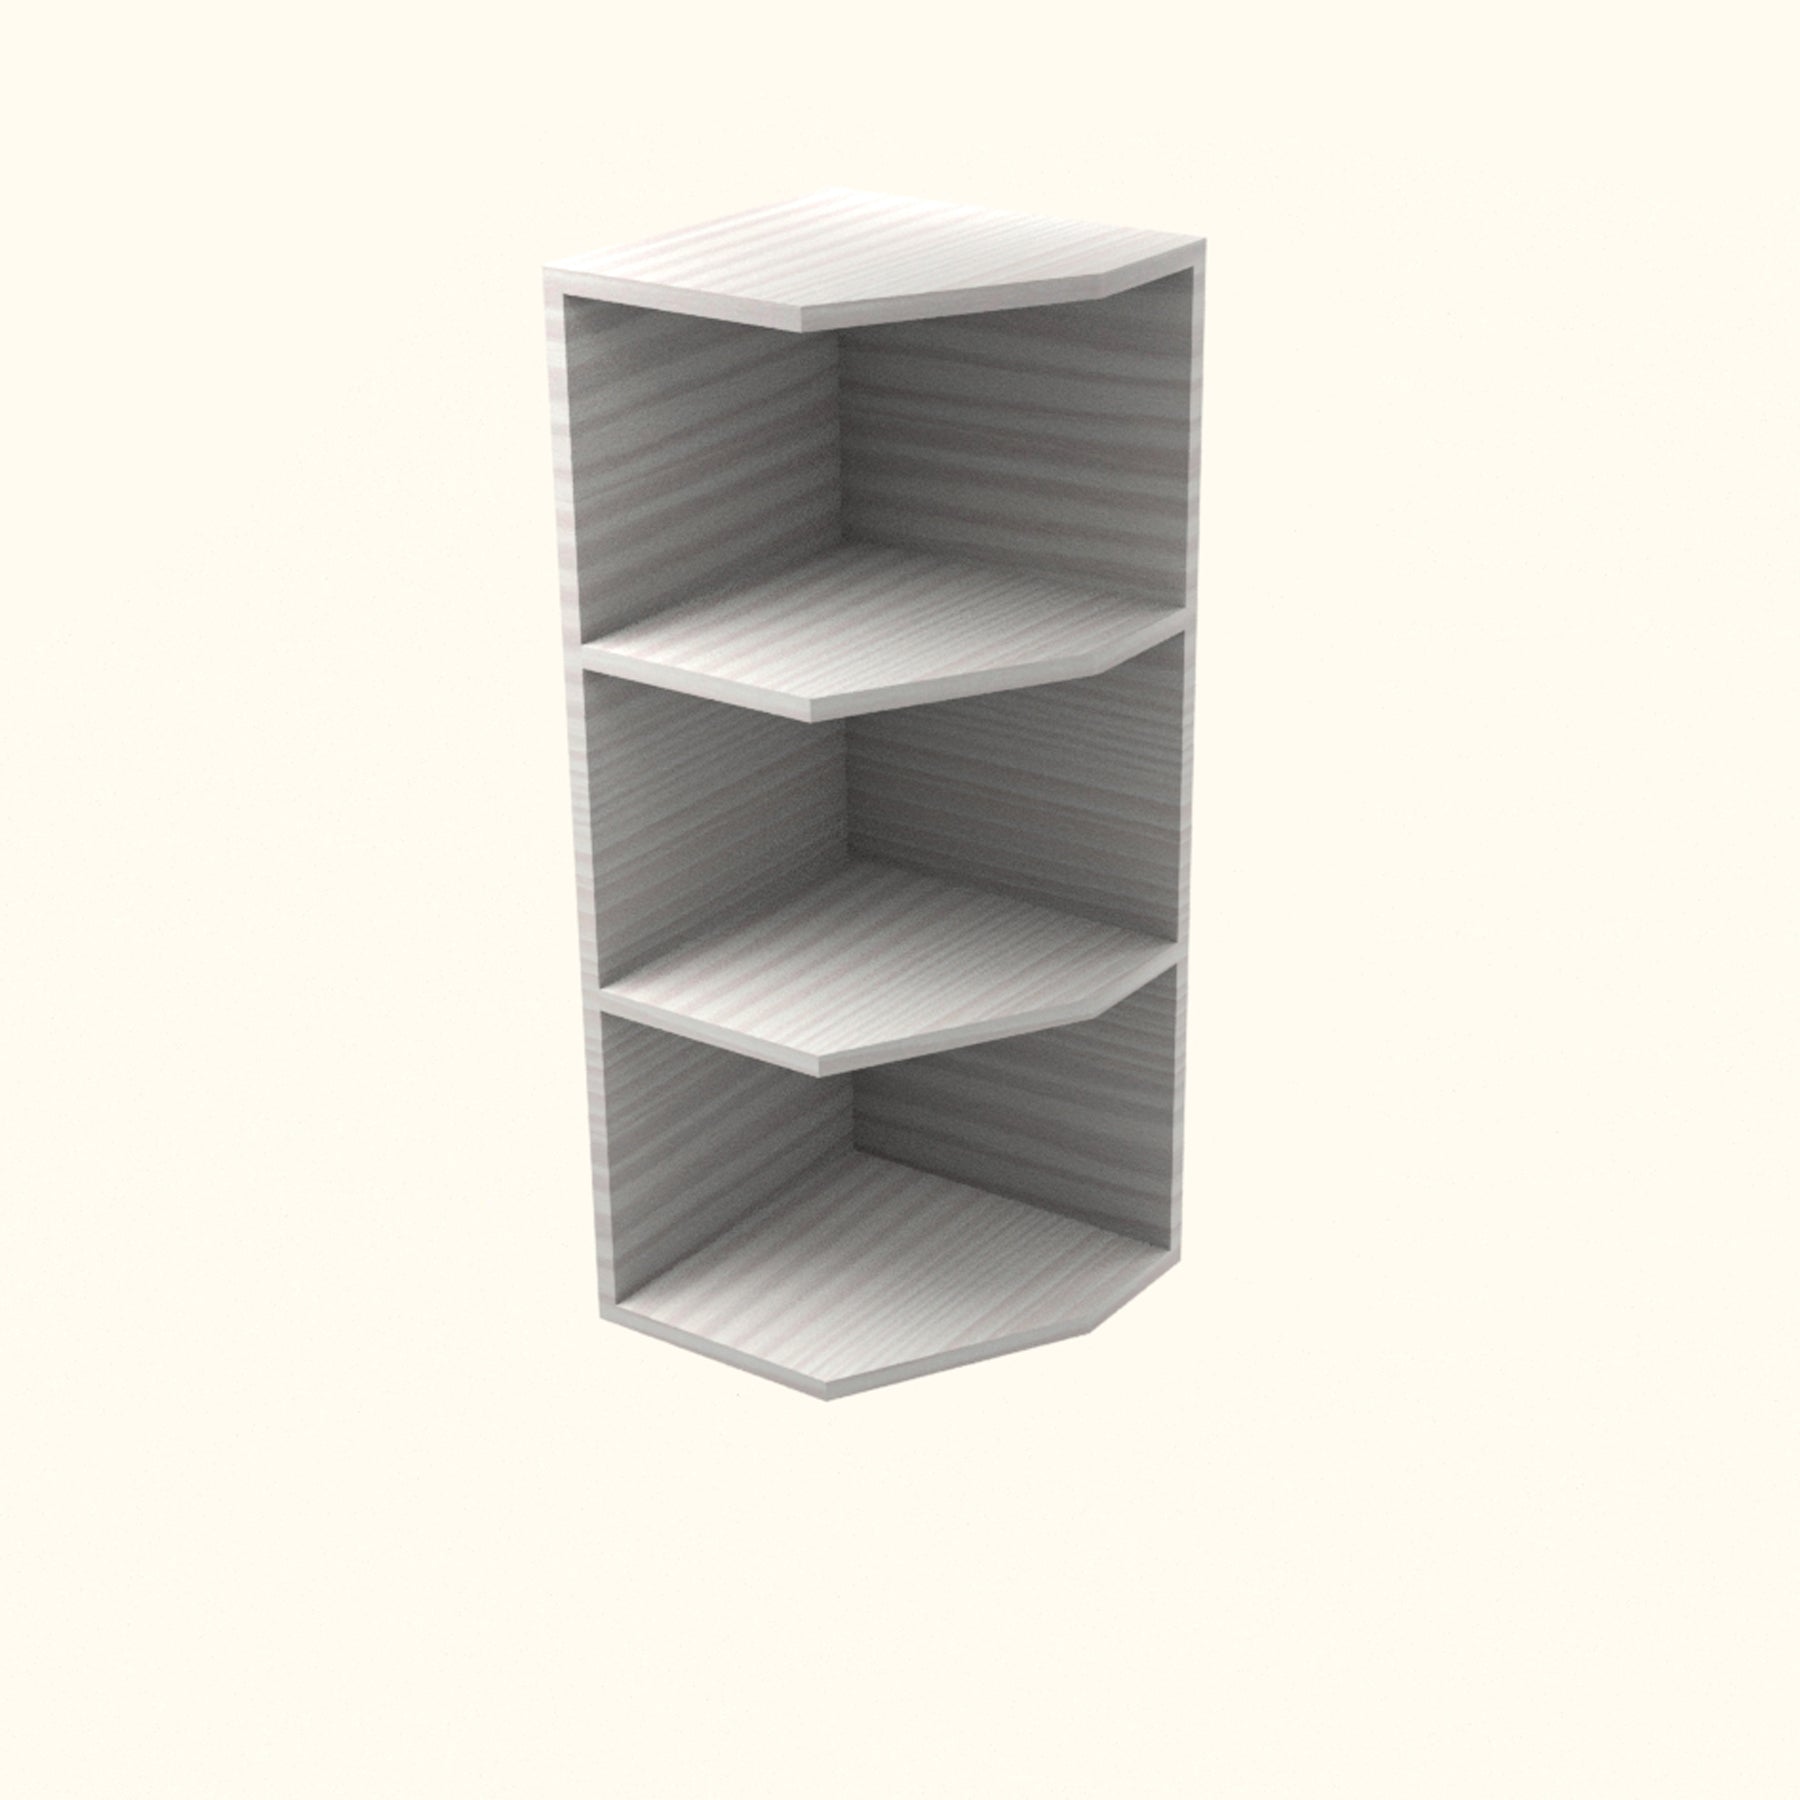 RTA - Pale Pine - End Wall Shelf Base Cabinets | 12"W x 42"H x 12"D